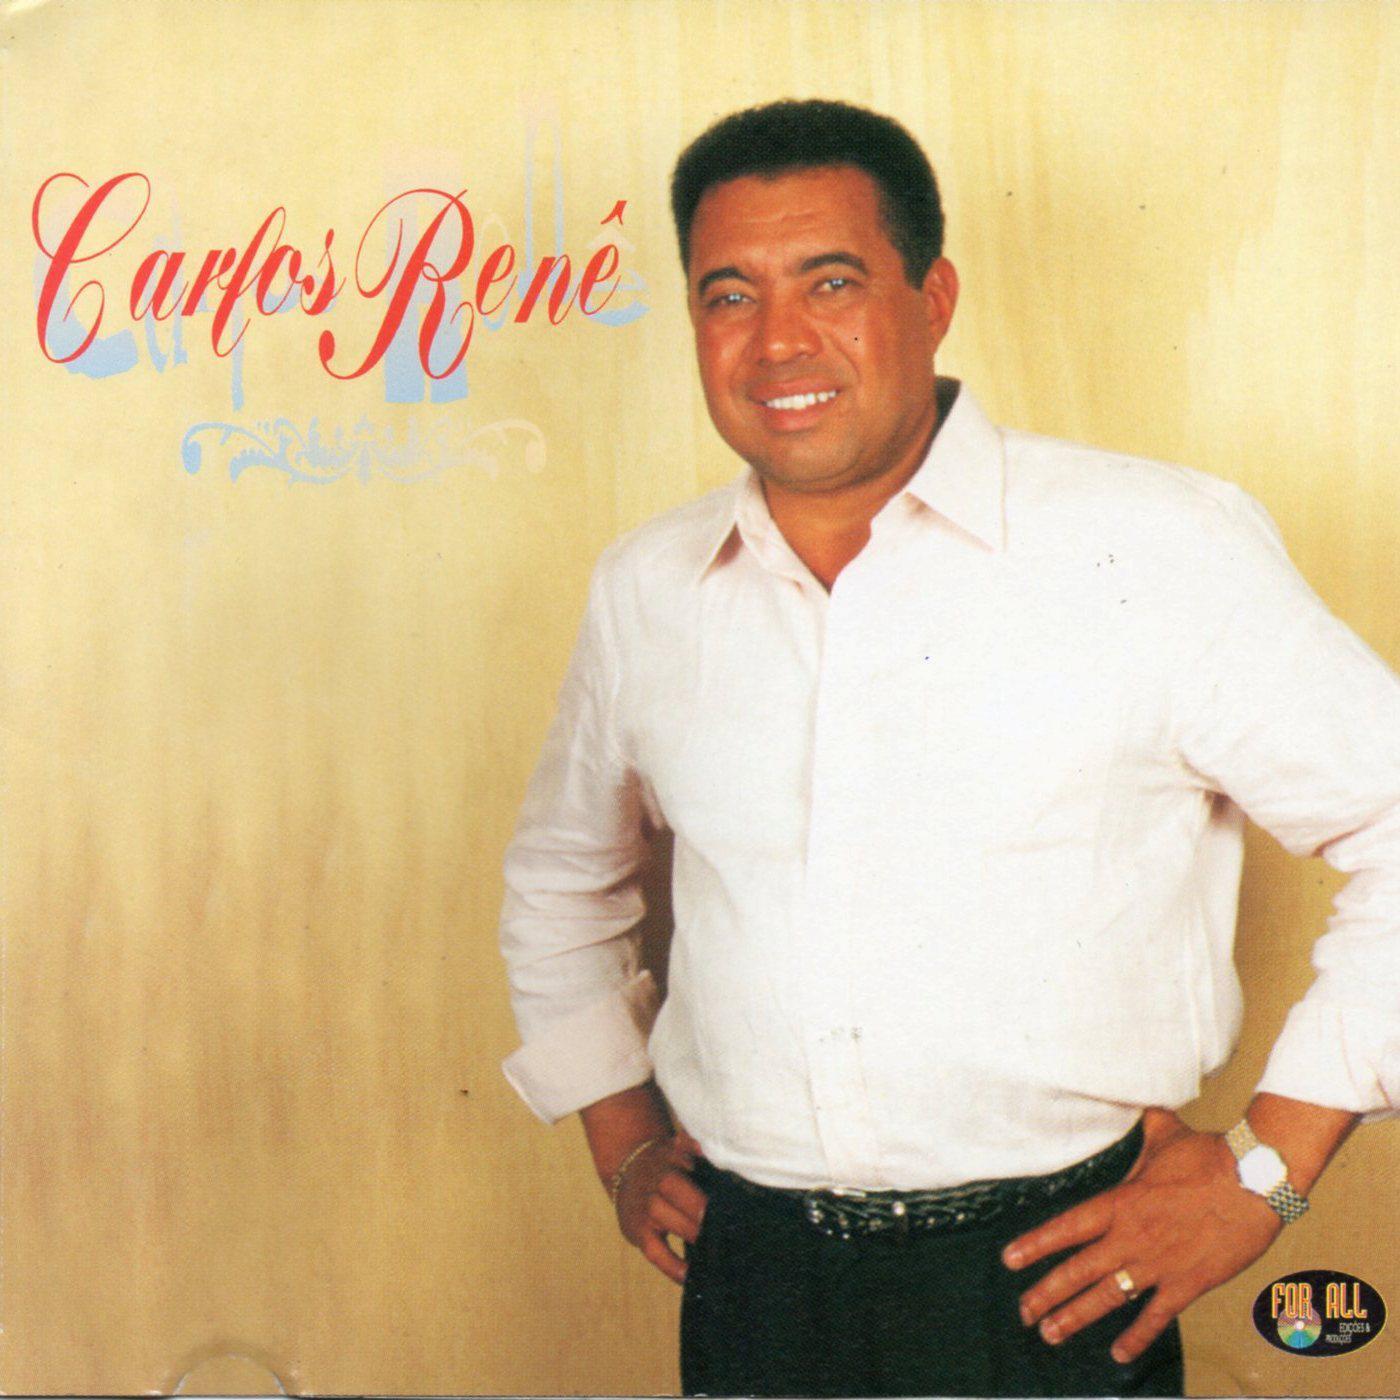 Carlos Renê